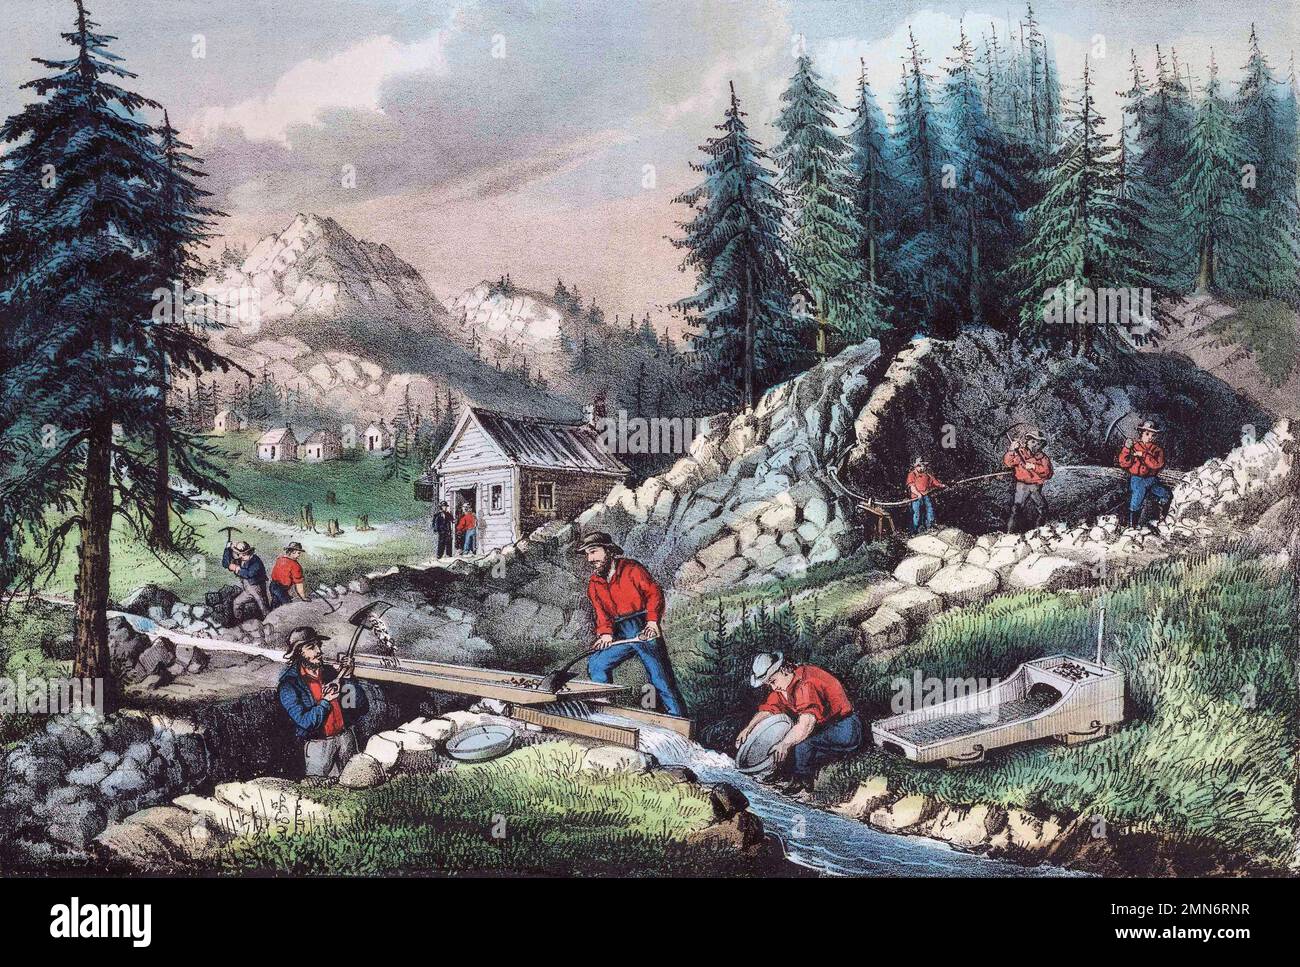 Goldbergbau während des kalifornischen Goldrauschs von 1848 bis 1855. Das Bild zeigt verschiedene Bergbautechniken, einschließlich Schwenken, Schleusen und Ausschachtung mit Wasserstrahlen. Aus einem Aufdruck aus dem 19. Jahrhundert, herausgegeben von Currier & Ives, Stockfoto